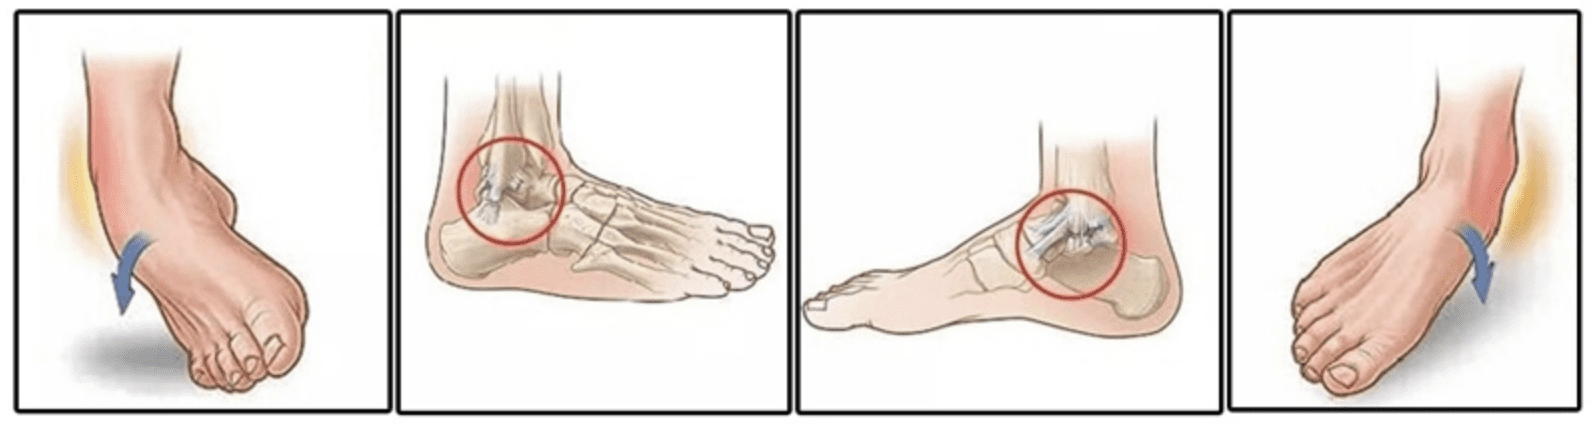 ankle sprain schematic graph illustration